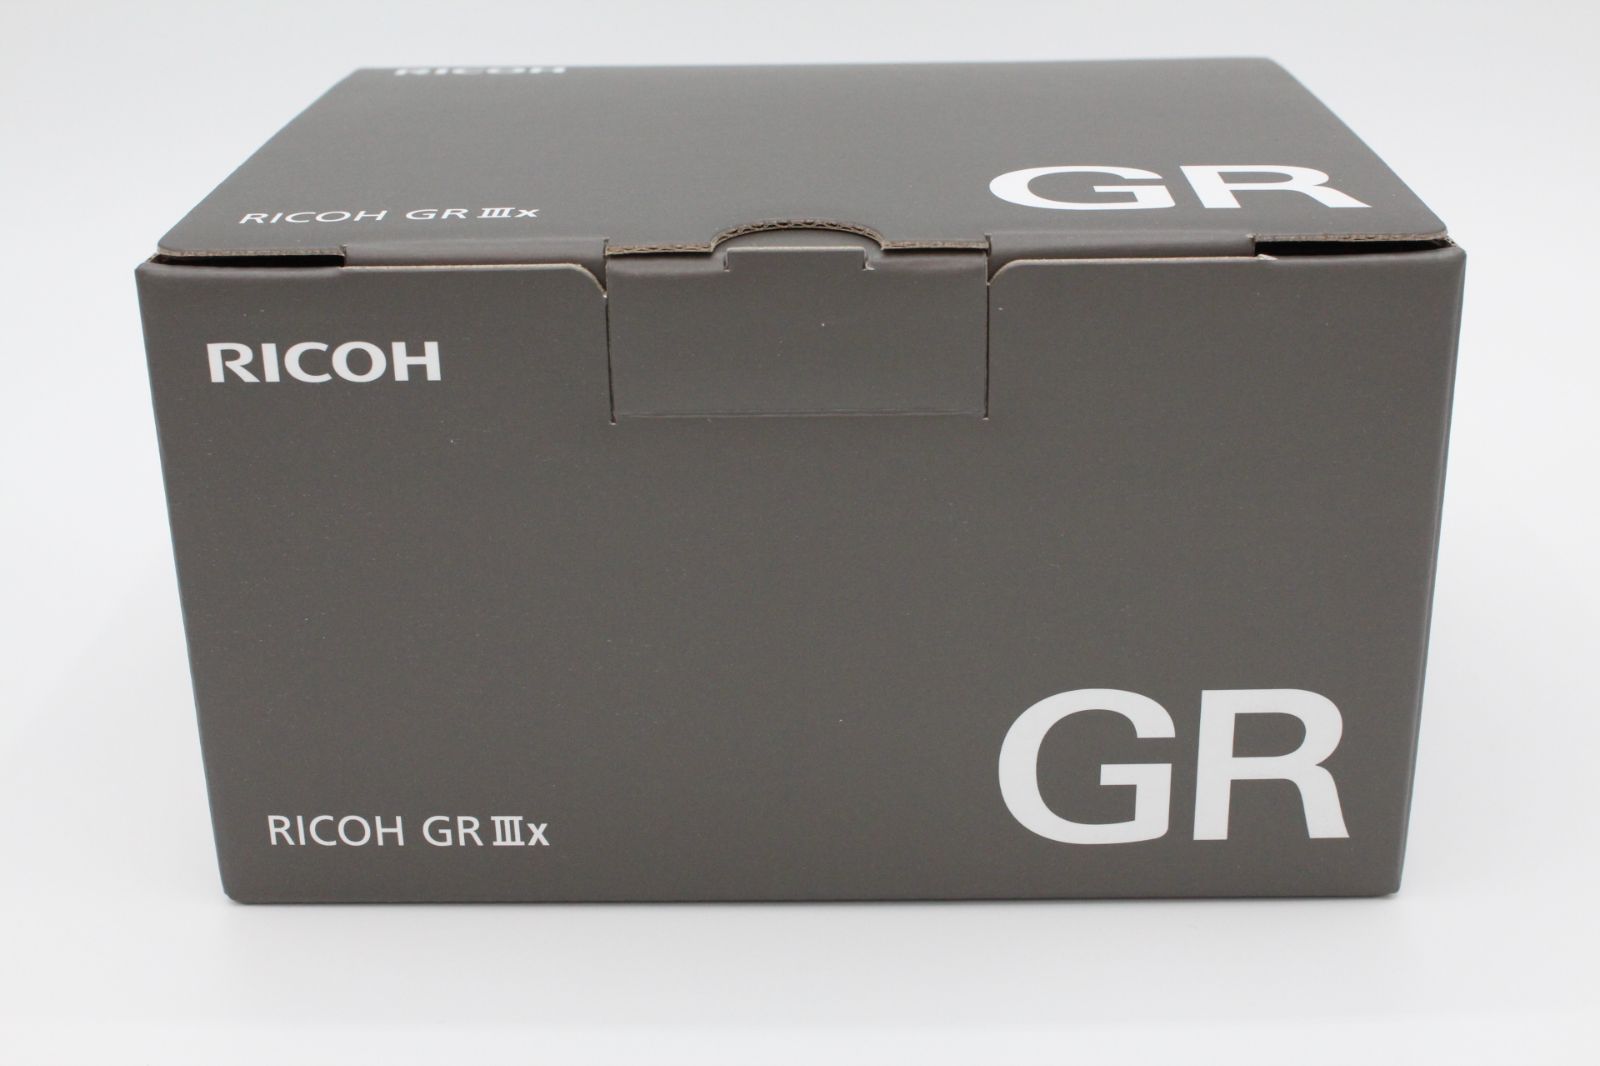 【新品未開封品】RICOH リコー GR IIIx  焦点距離 40mm / 24.2M APS-Cサイズ大型CMOSセンサー搭載/最強のスナップシュータ― / 約0.8秒 高速起動/高速ハイブリッドAF/高解像・高コントラスト GRレンズ